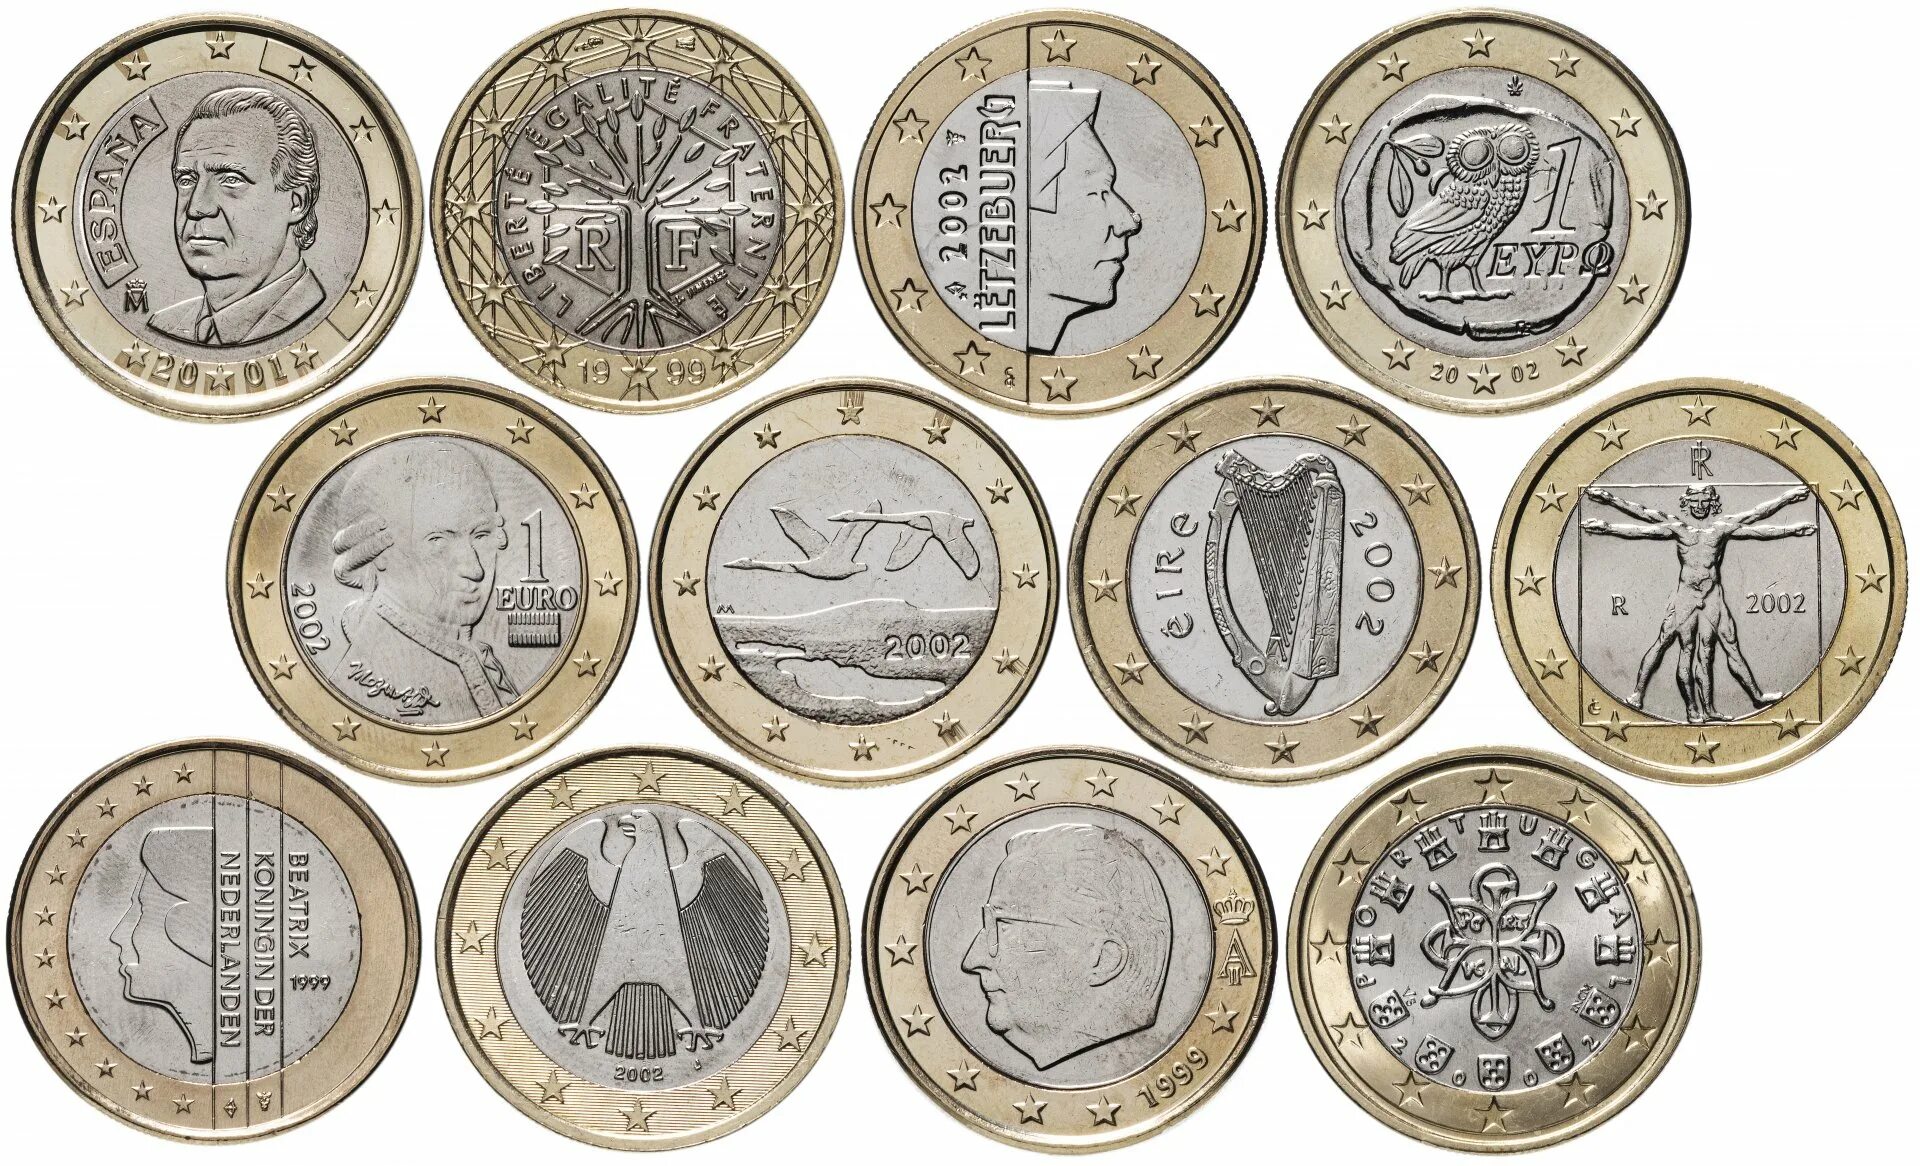 Сколько монет евро. Монеты евро 2002 1 лепто. Коллекционные монеты евро. Редкие монеты евро. Набор монет 2002.